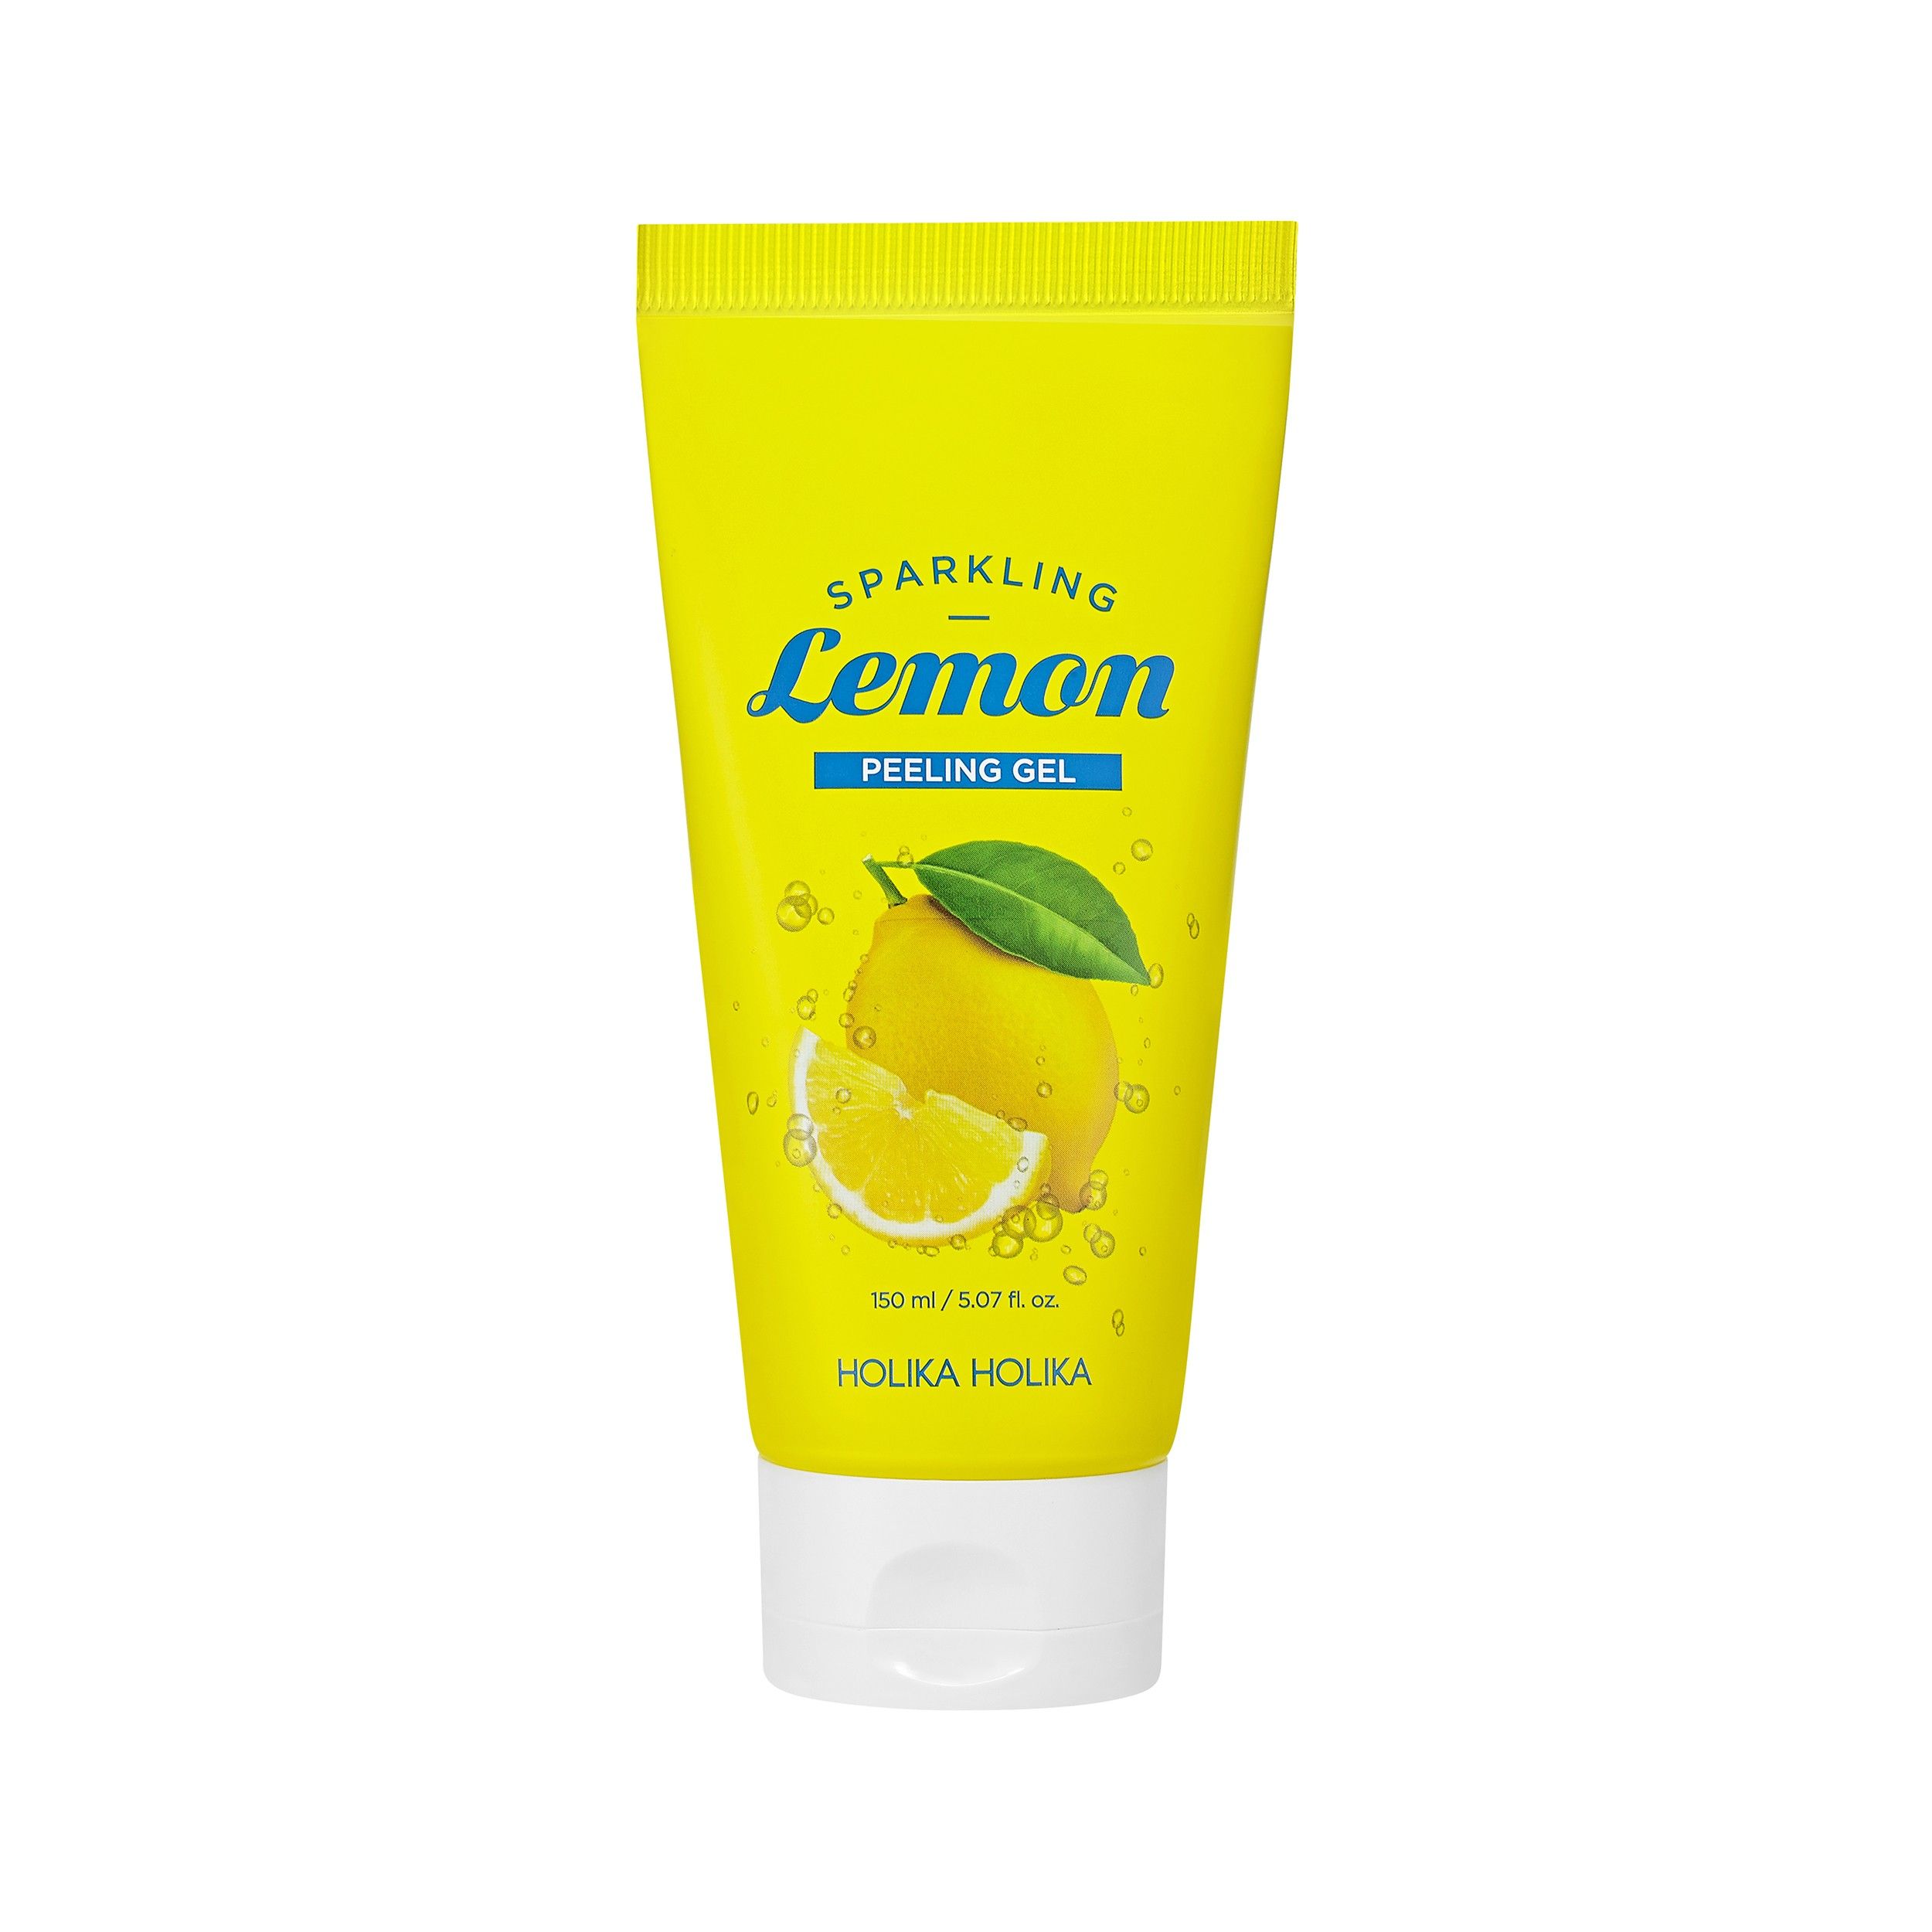 Gesichtspeeling - Sparkling Lemon Peeling Gel